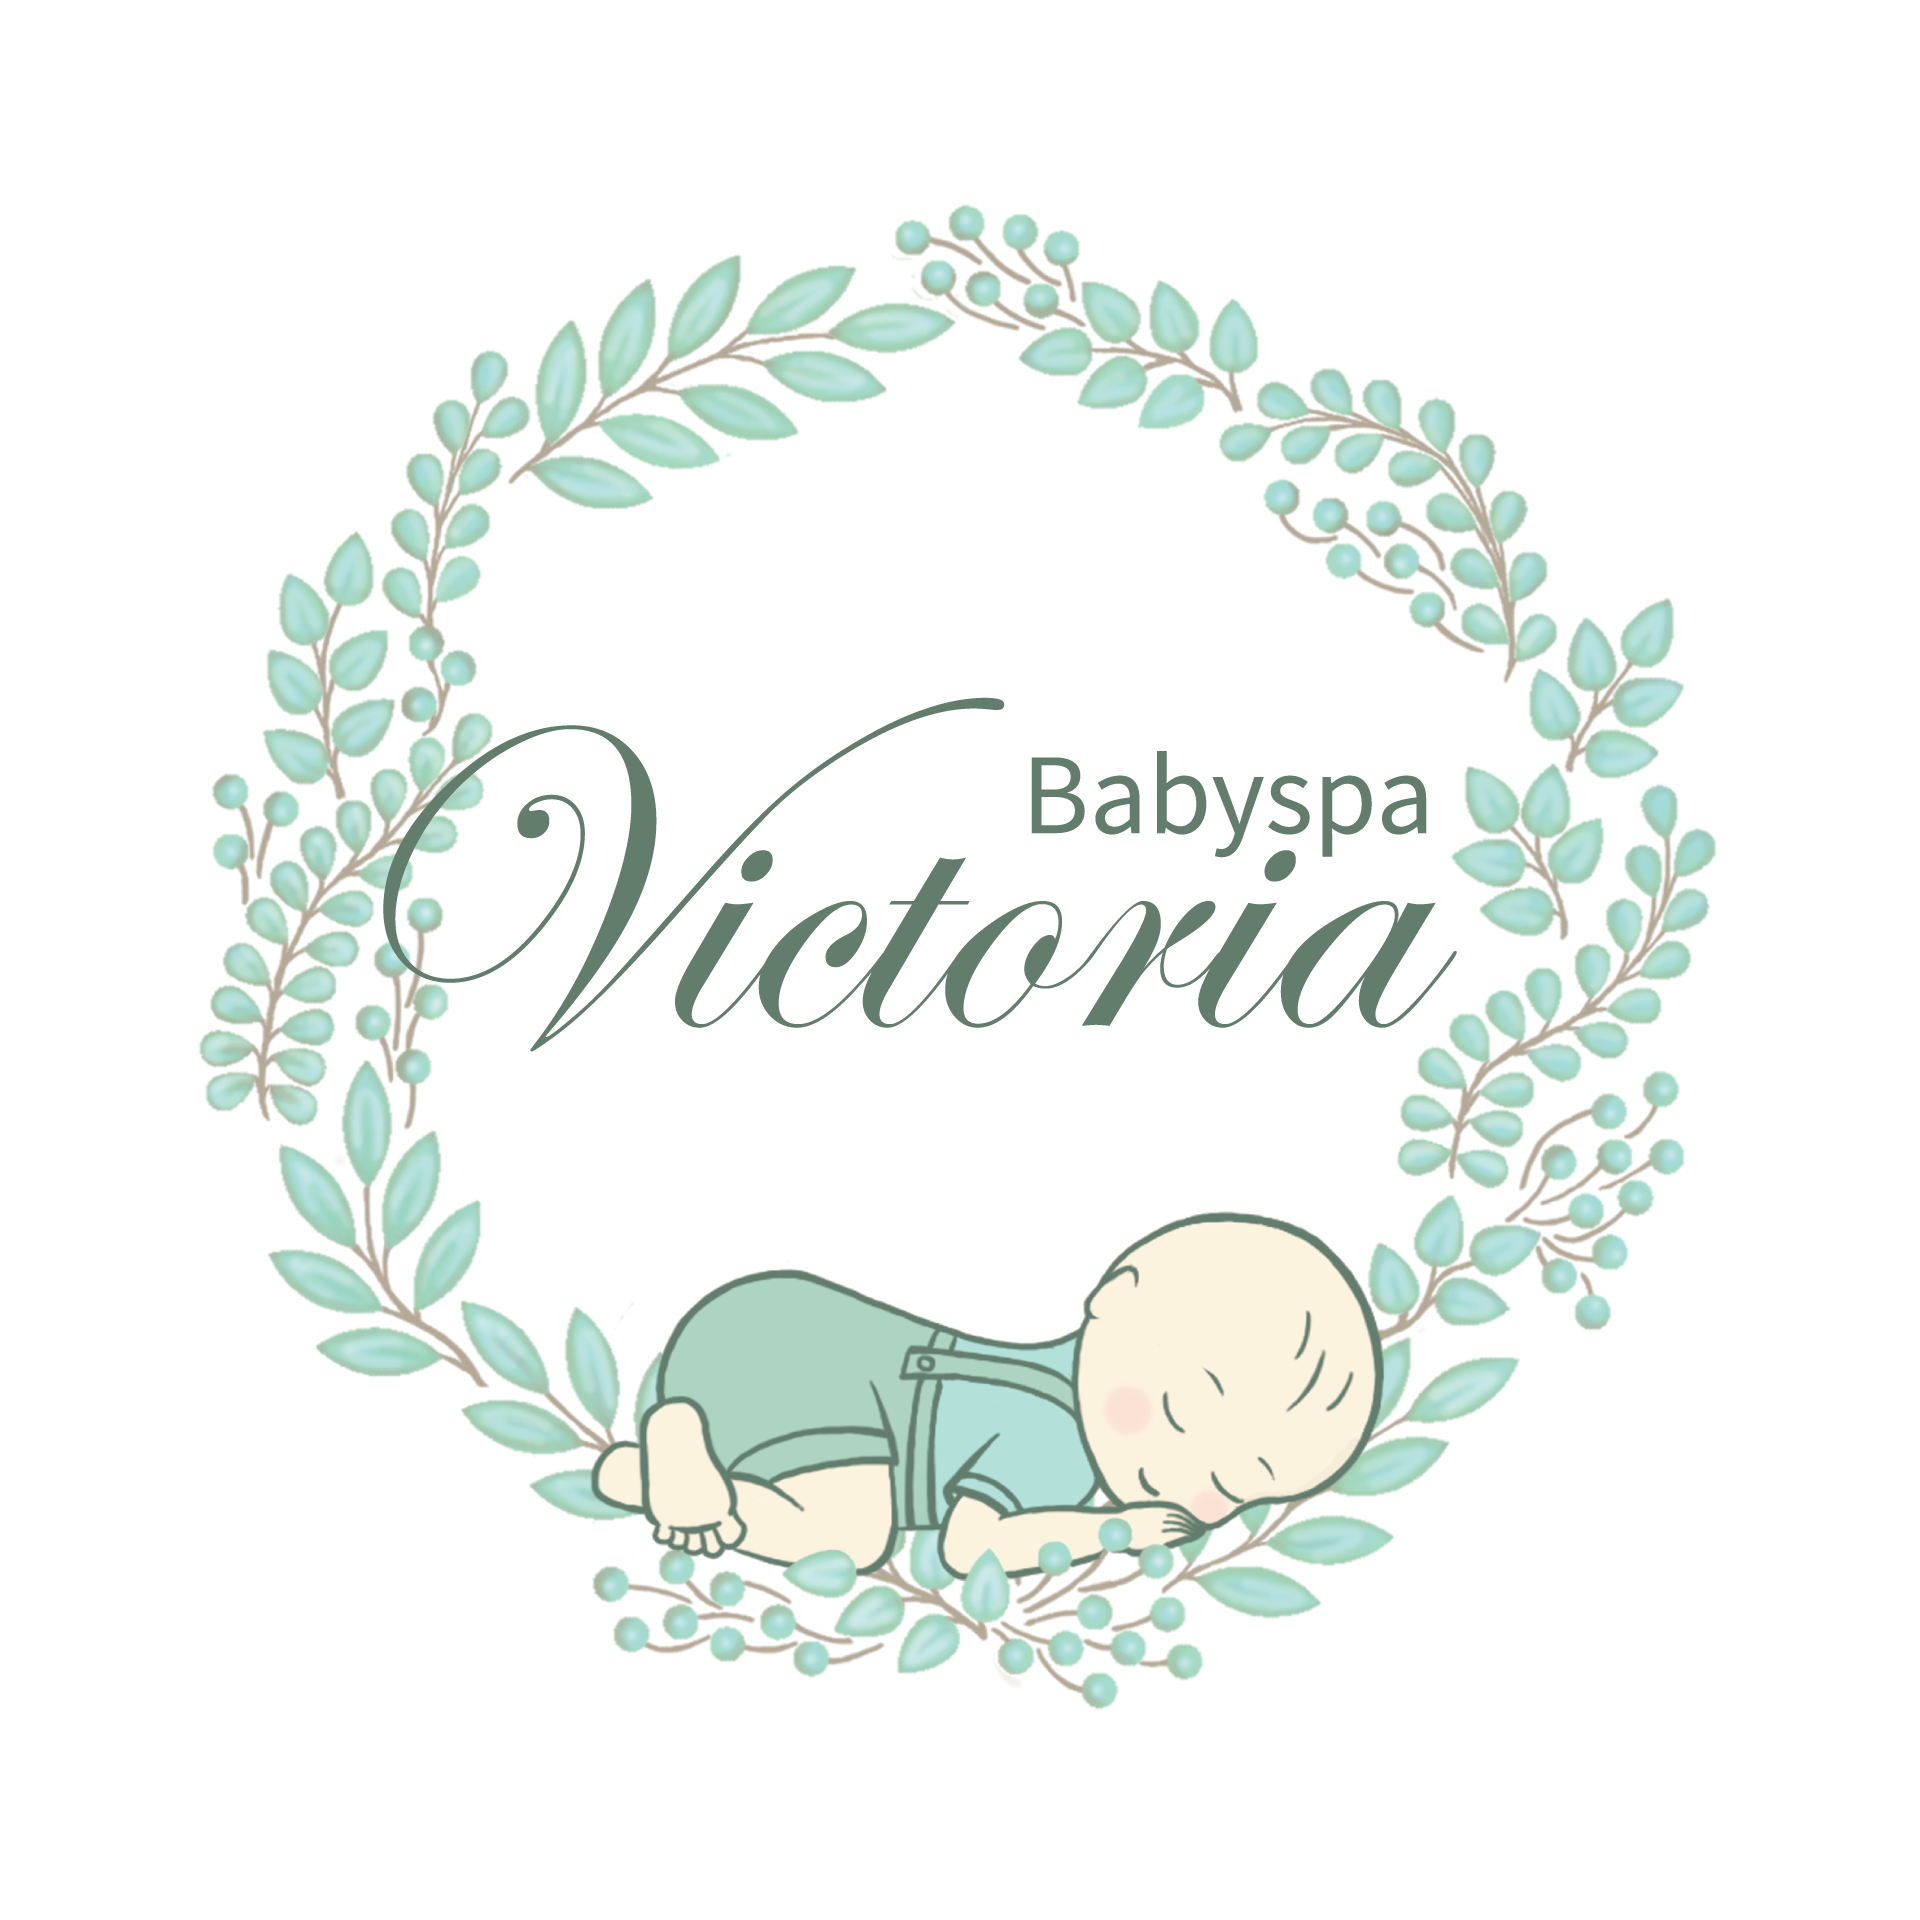 Babyspa-victoria-final-logo-witte-achtergrond